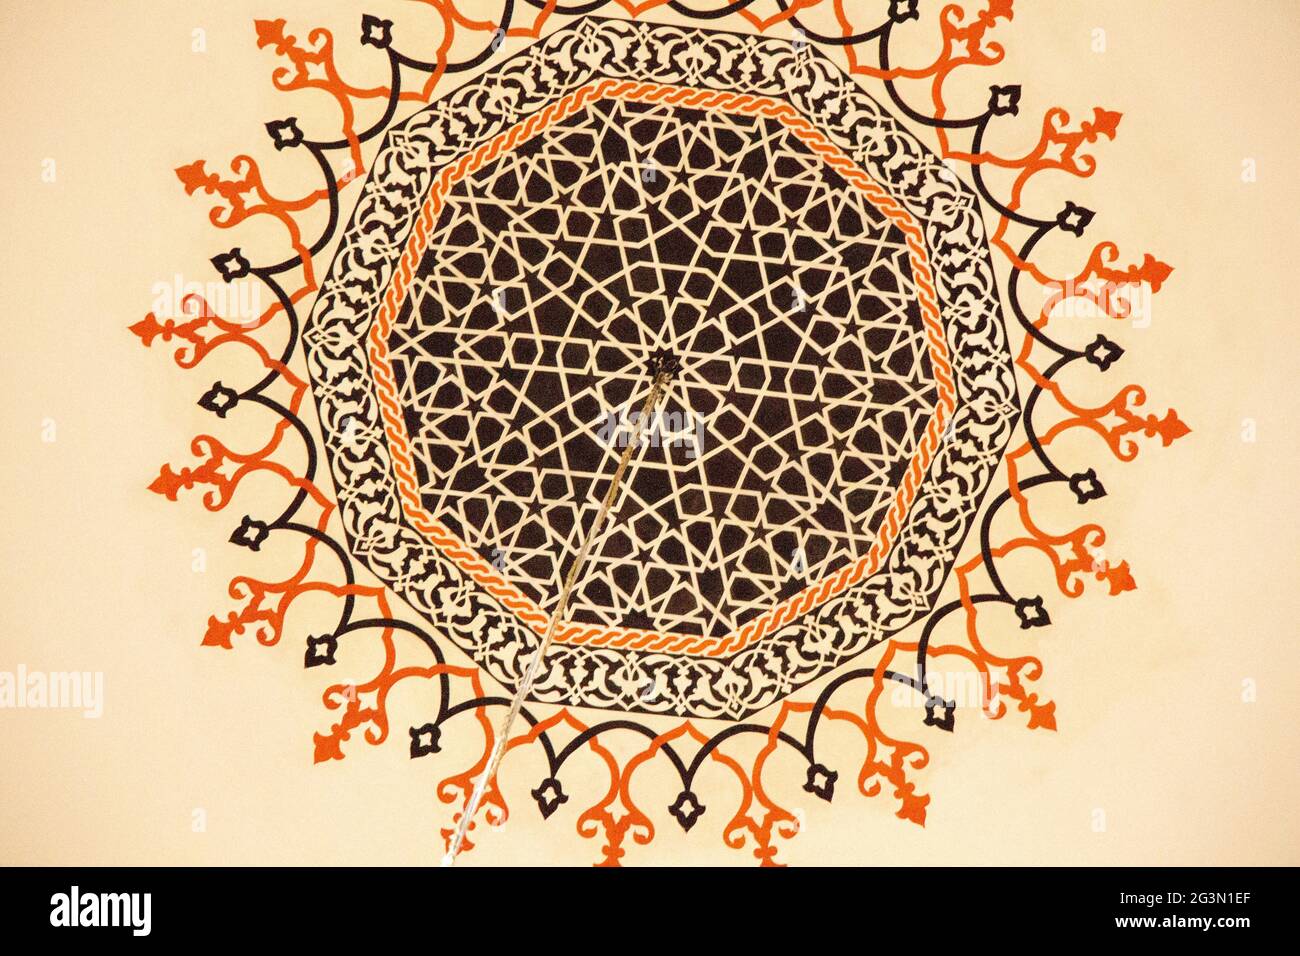 Art ottoman avec motifs géométriques sur bois Banque D'Images